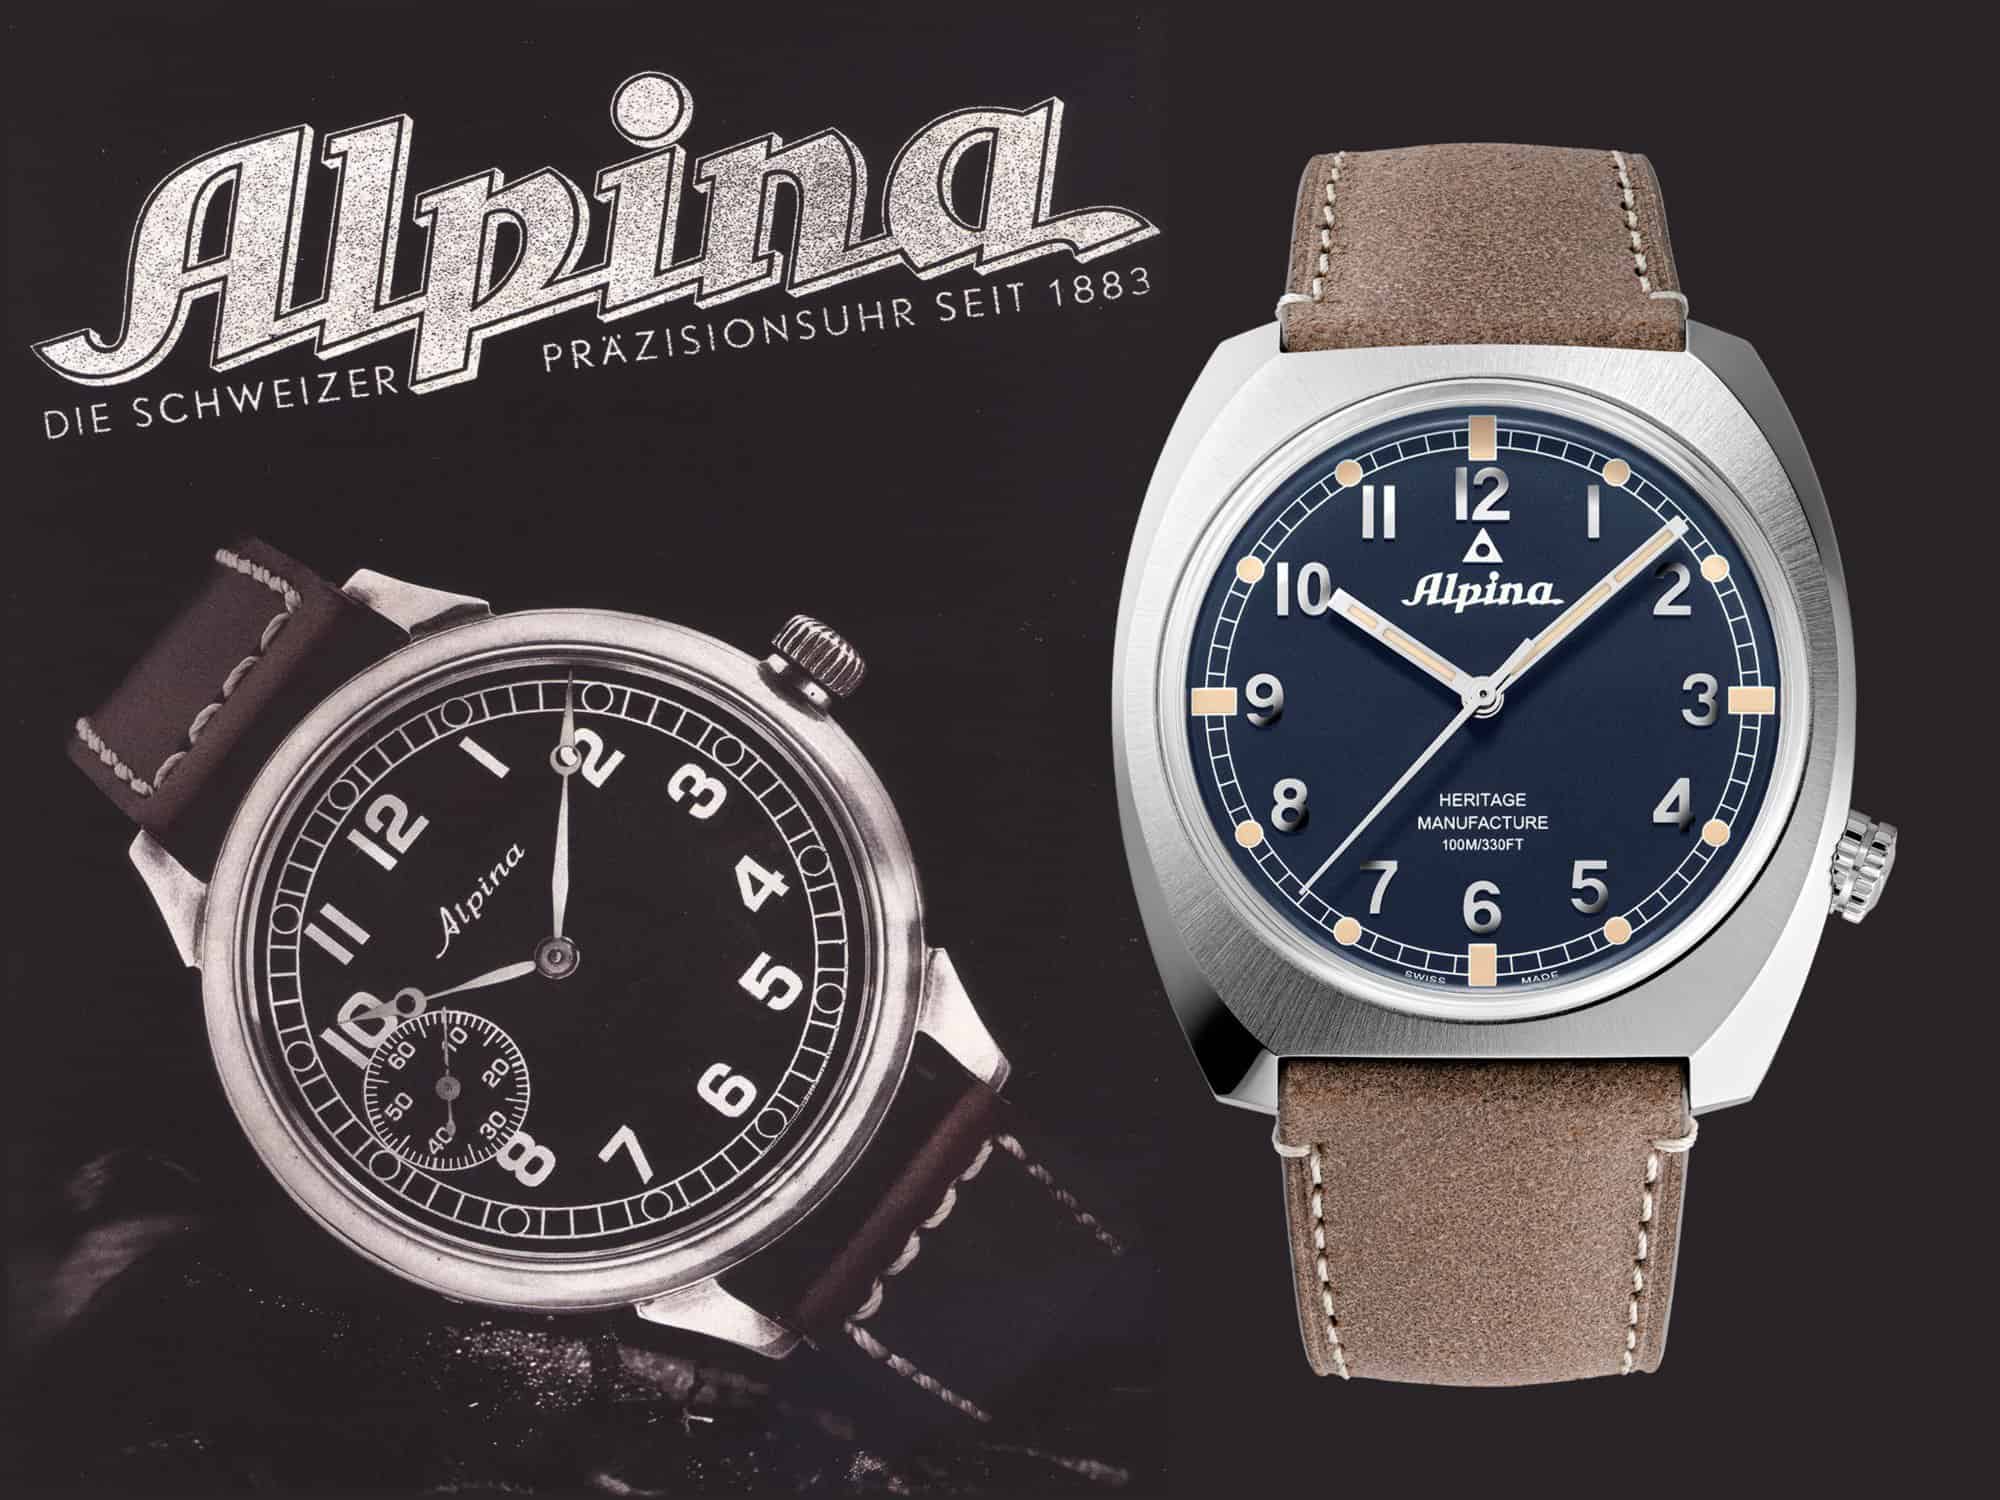 Alpina Fliegeruhr 1930-er Jahre und Alpina Startimer Pilot Heritage Manufacture, Referenz AL-709AN4SH6